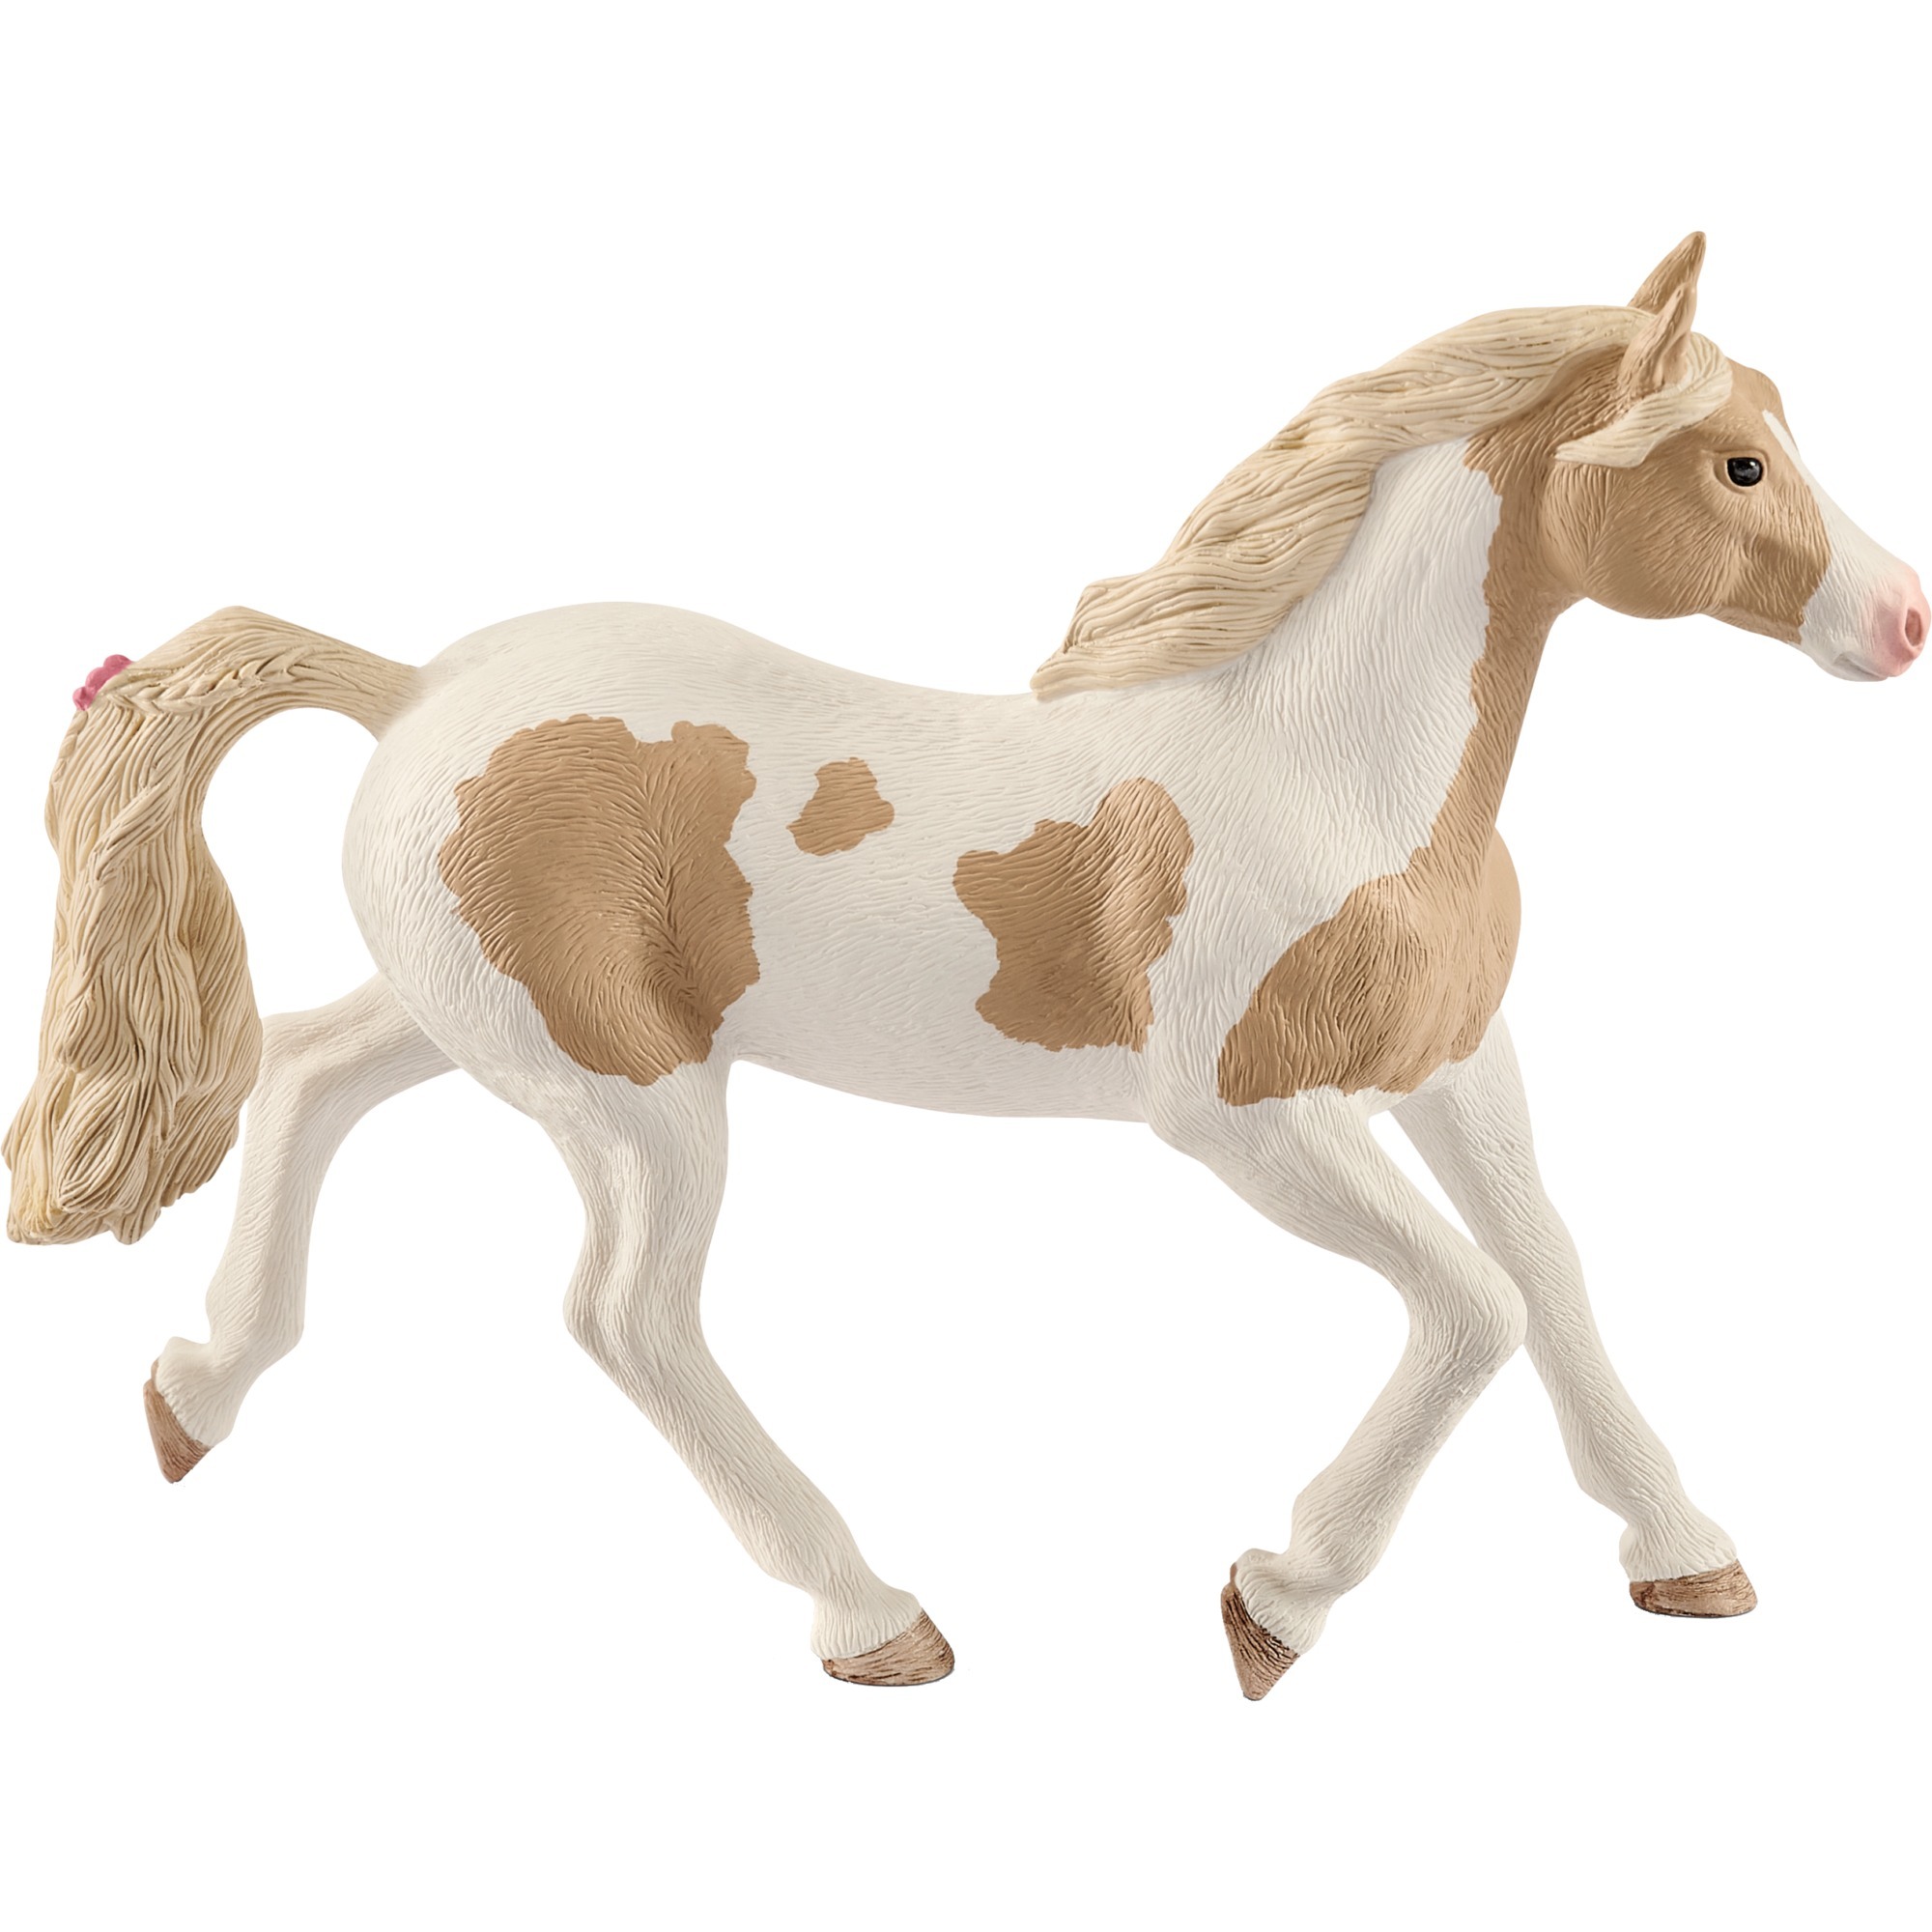 Image of Alternate - Horse Club Paint Horse Stute, Spielfigur online einkaufen bei Alternate